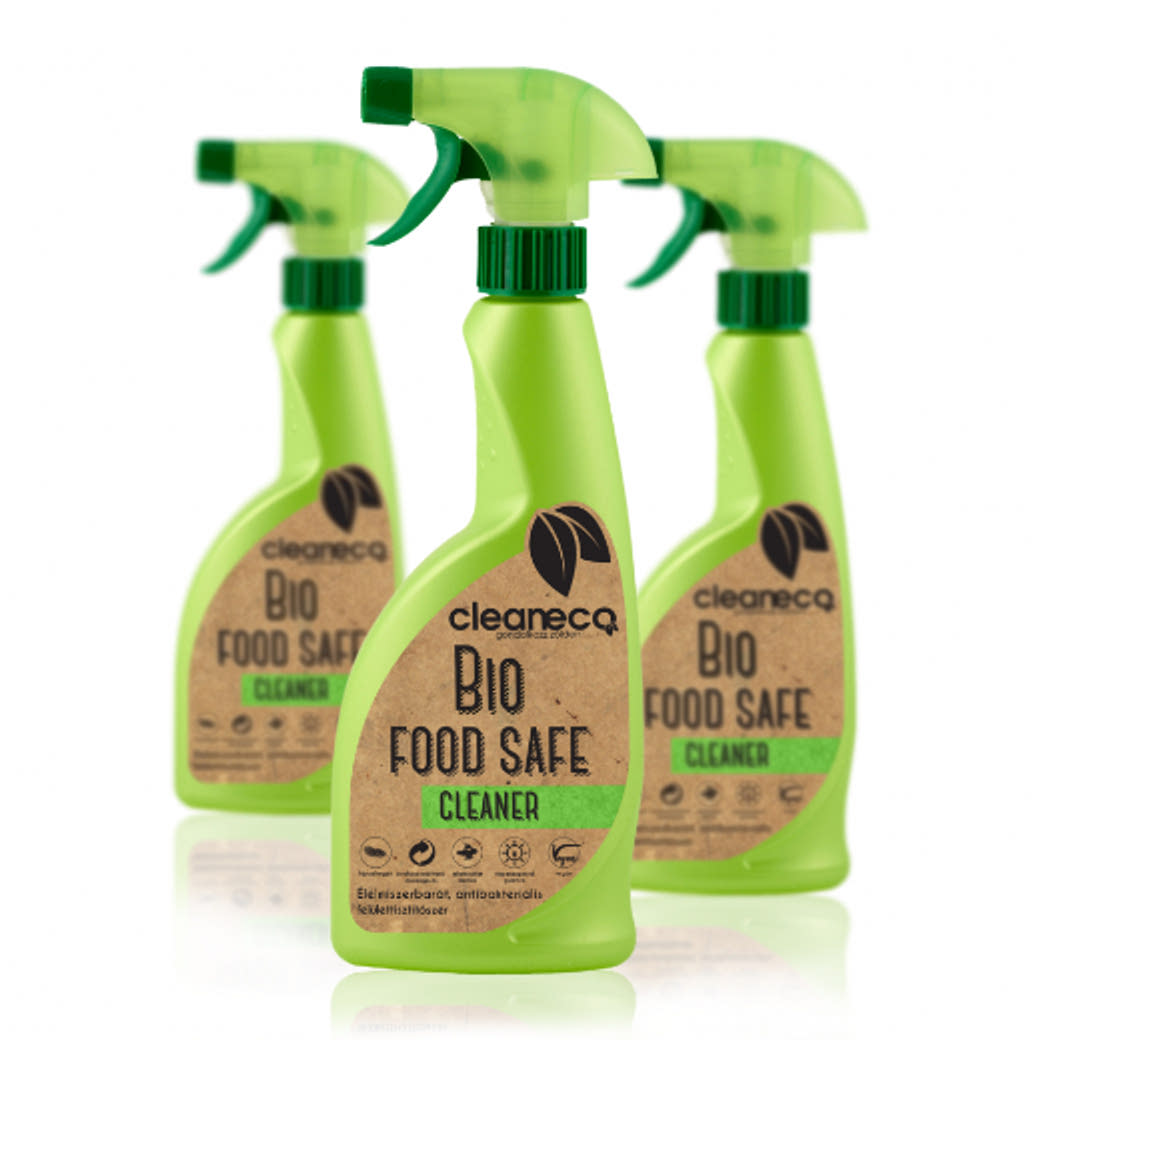 Bio food safe cleaner